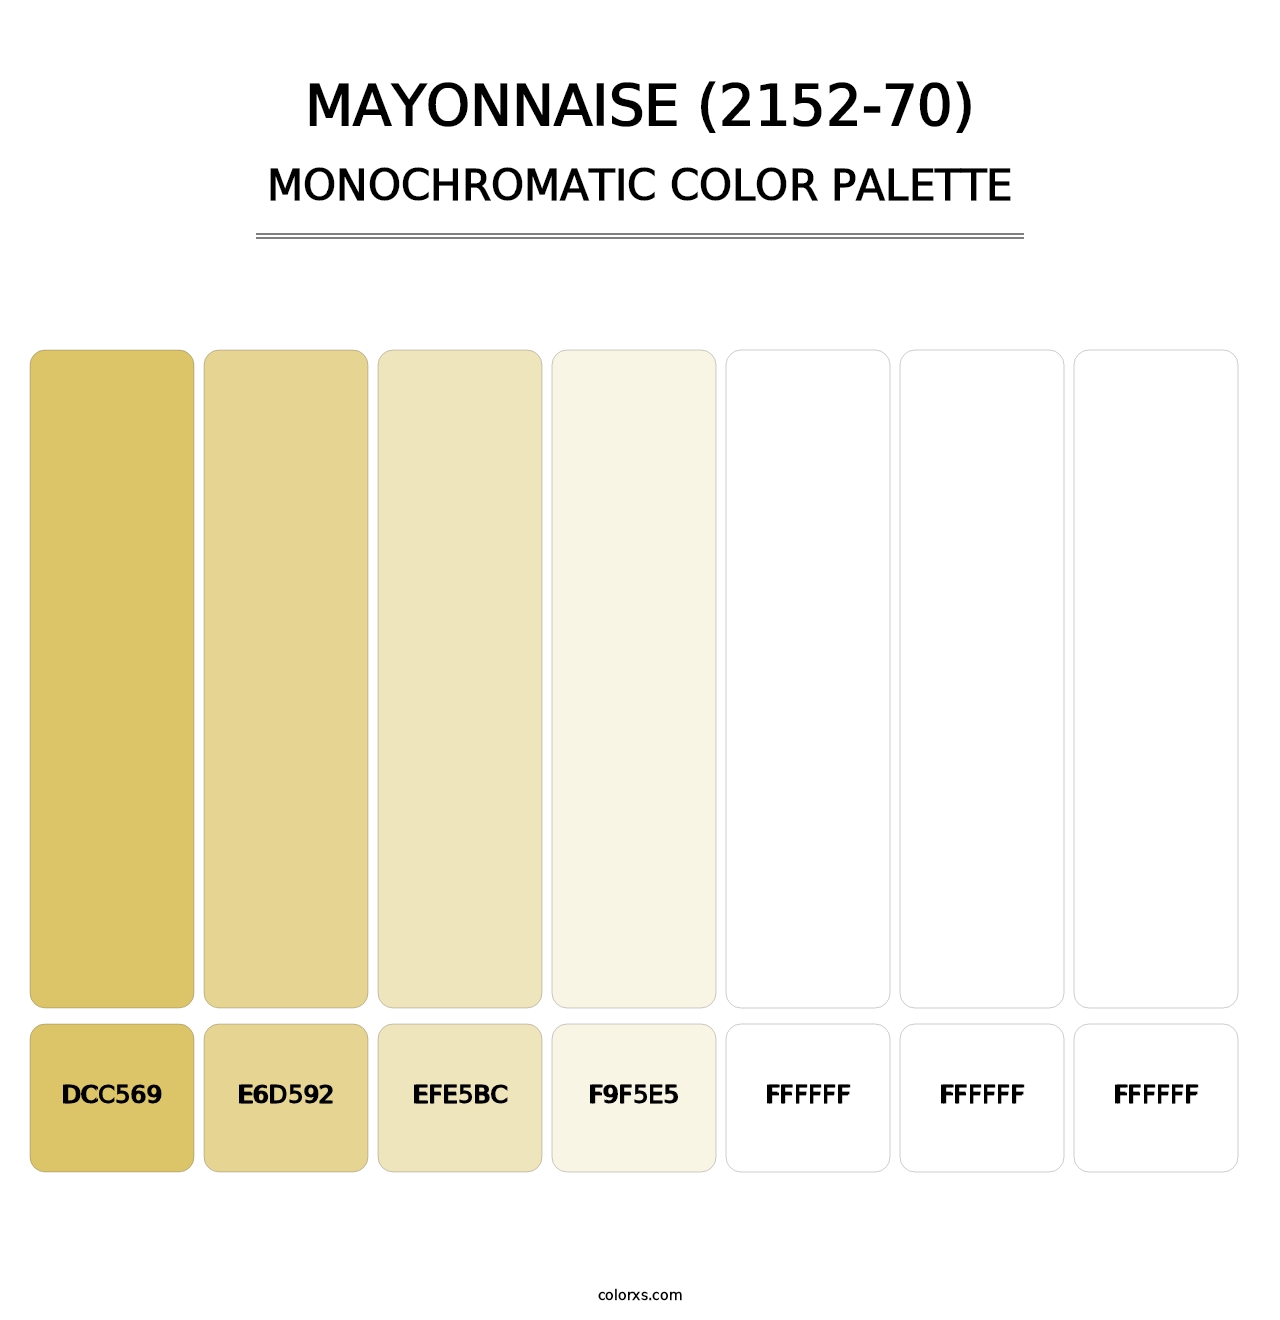 Mayonnaise (2152-70) - Monochromatic Color Palette